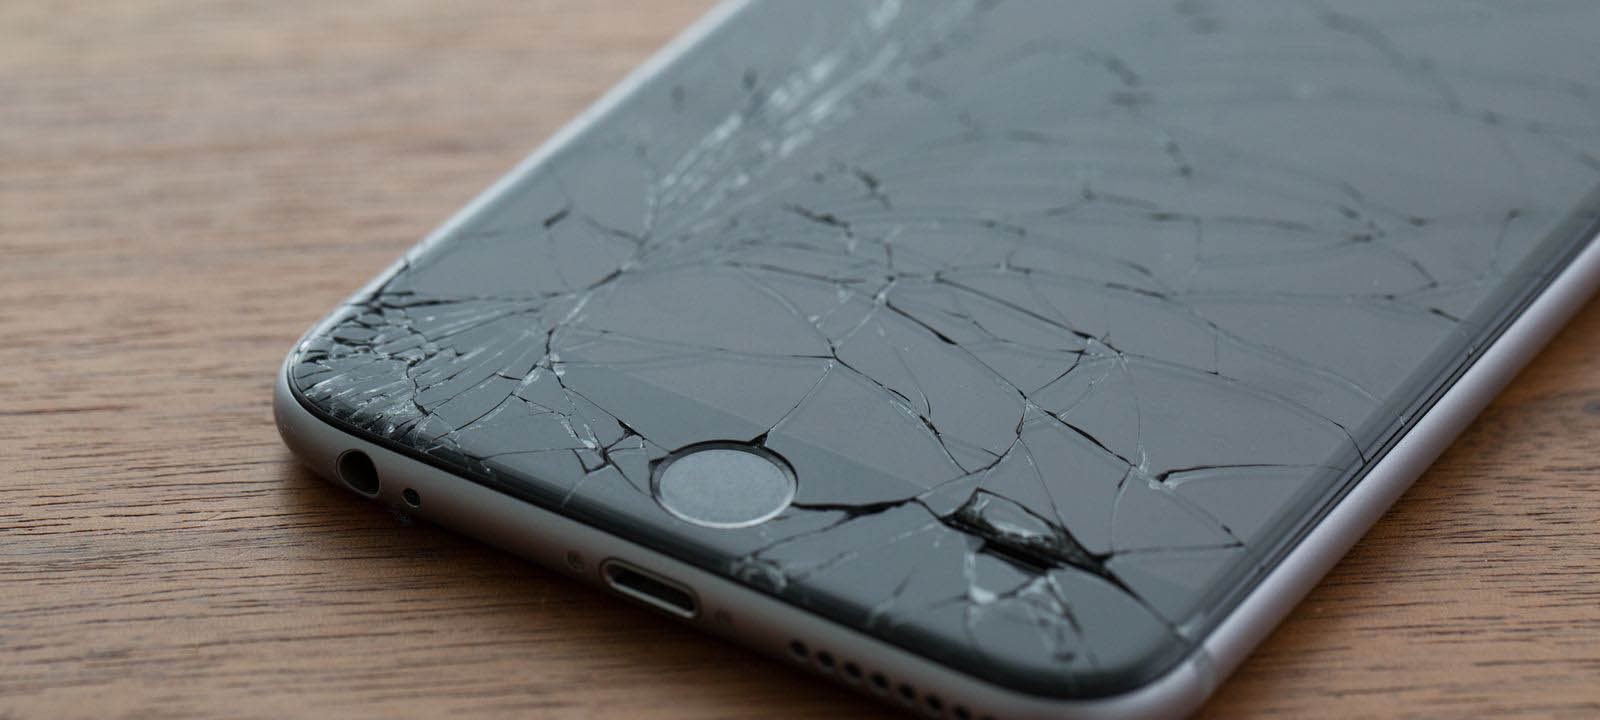 Réparer l'écran de son iPhone pourra coûter moins cher (mais…)